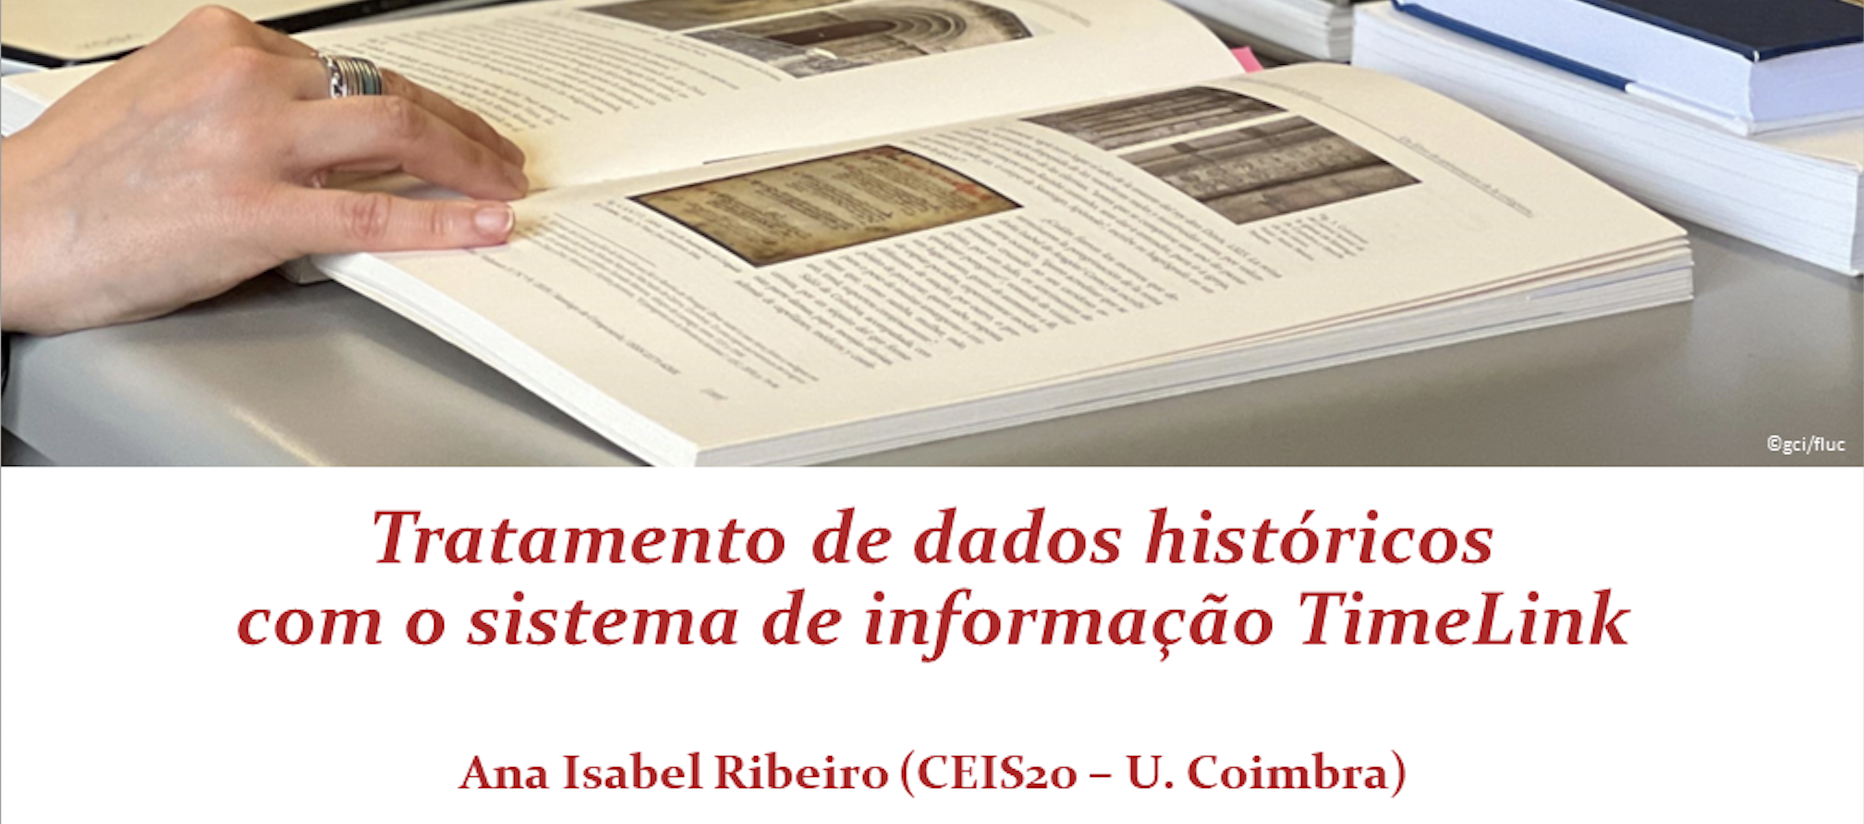 Tratamento de dados históricos com o sistema de informação TimeLink, por Ana Isabel Ribeiro (Ceis20)